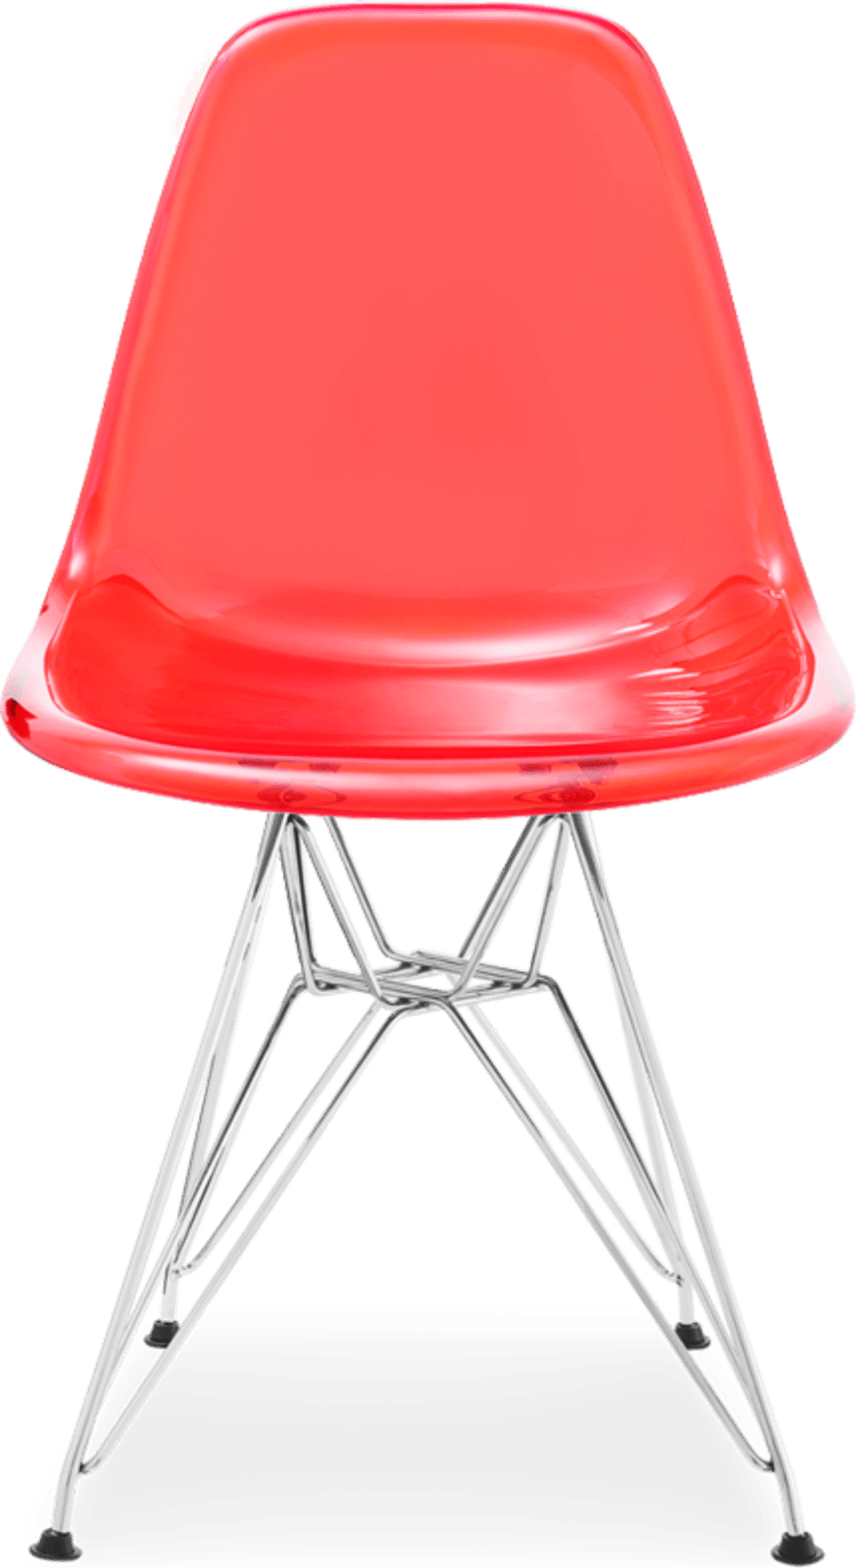 Gjennomsiktig stol i DSR-stil Red image.